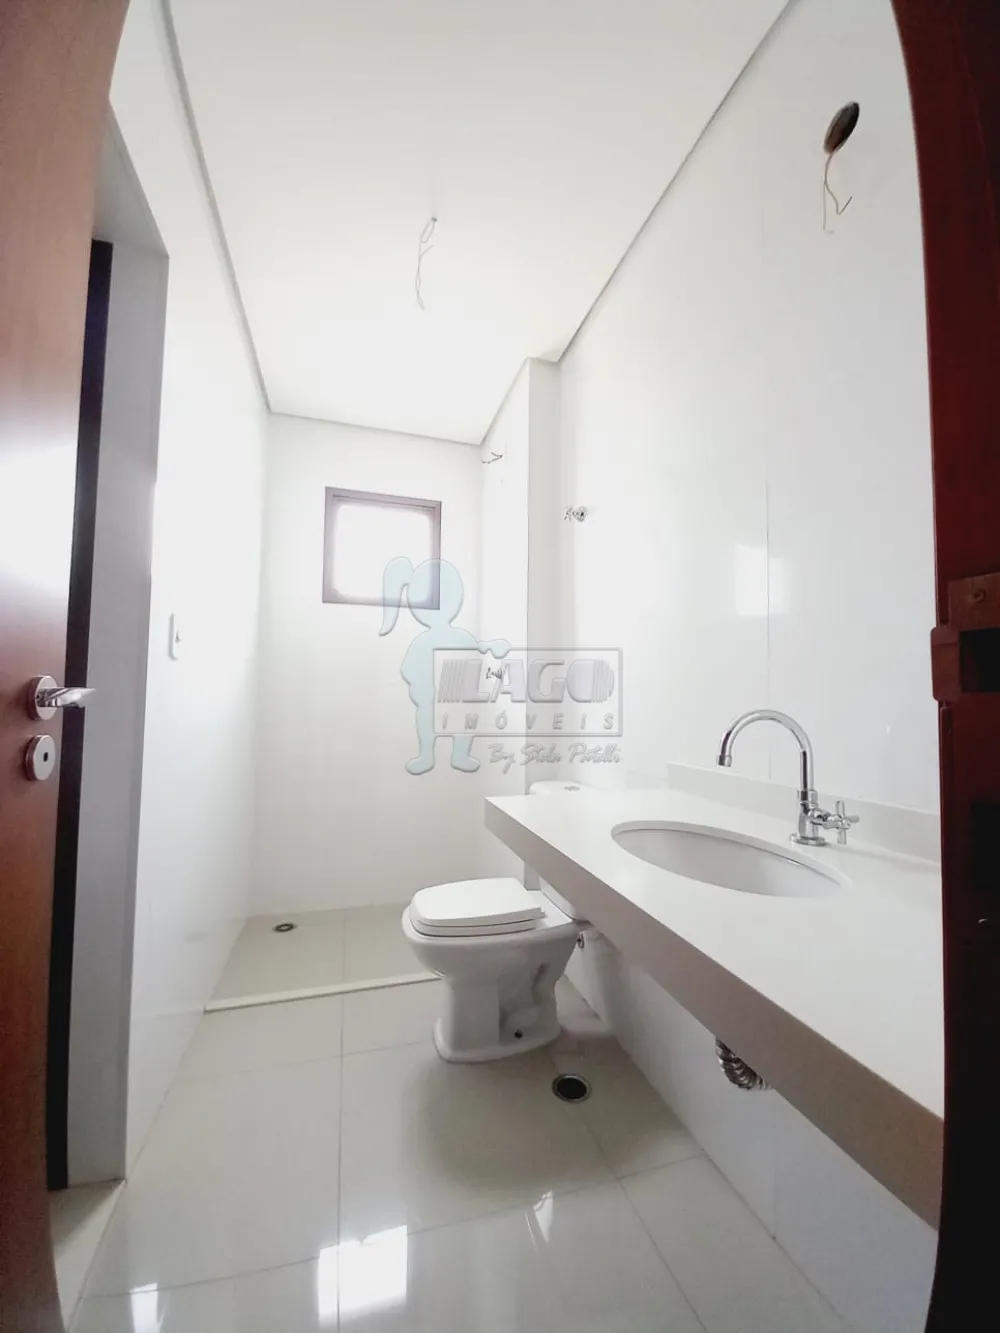 Alugar Apartamentos / Cobertura em Ribeirão Preto R$ 5.000,00 - Foto 9